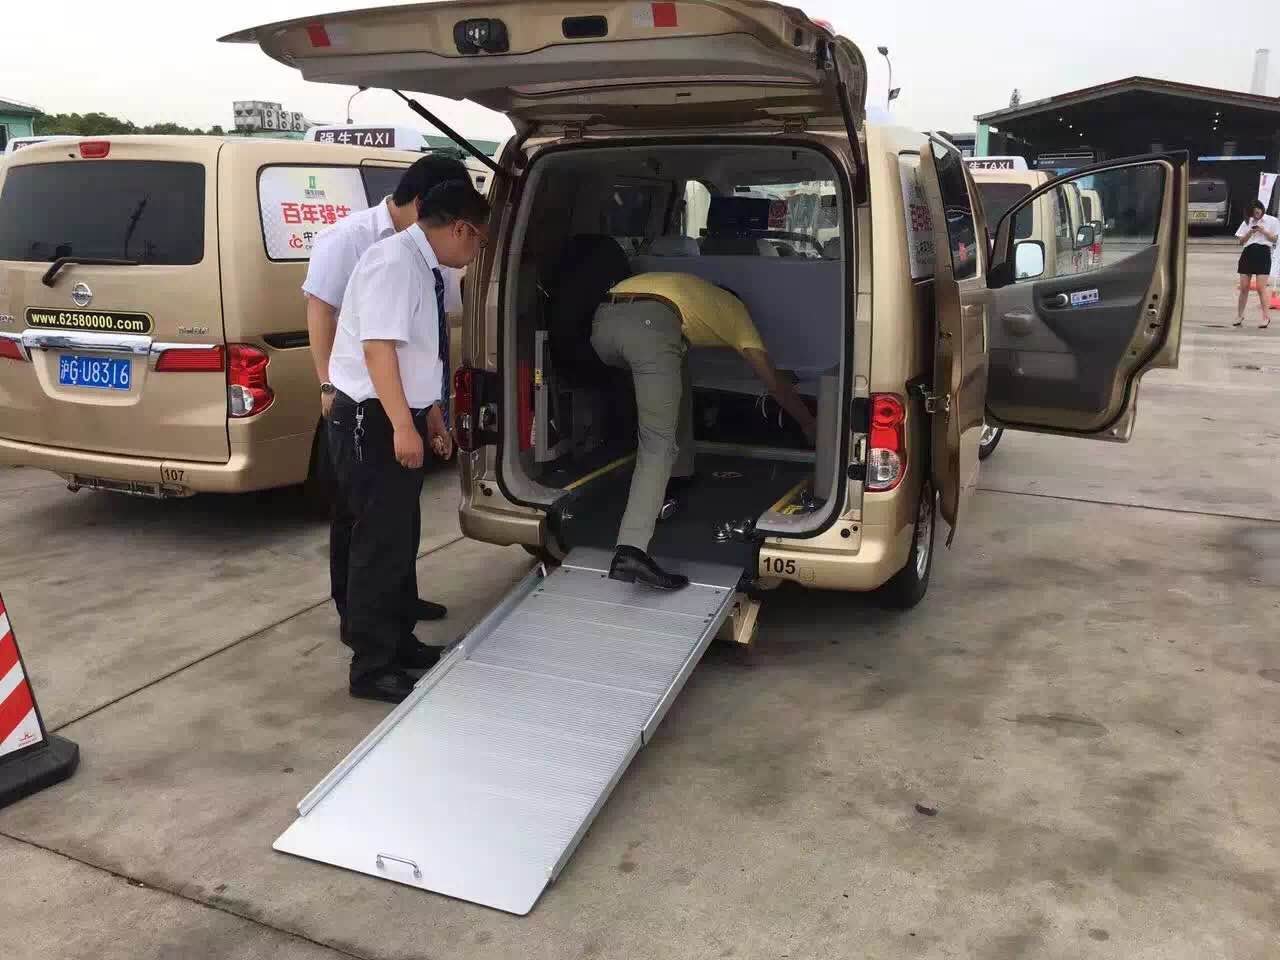 上海:多功能无障碍出租车投运 党员司机为残障